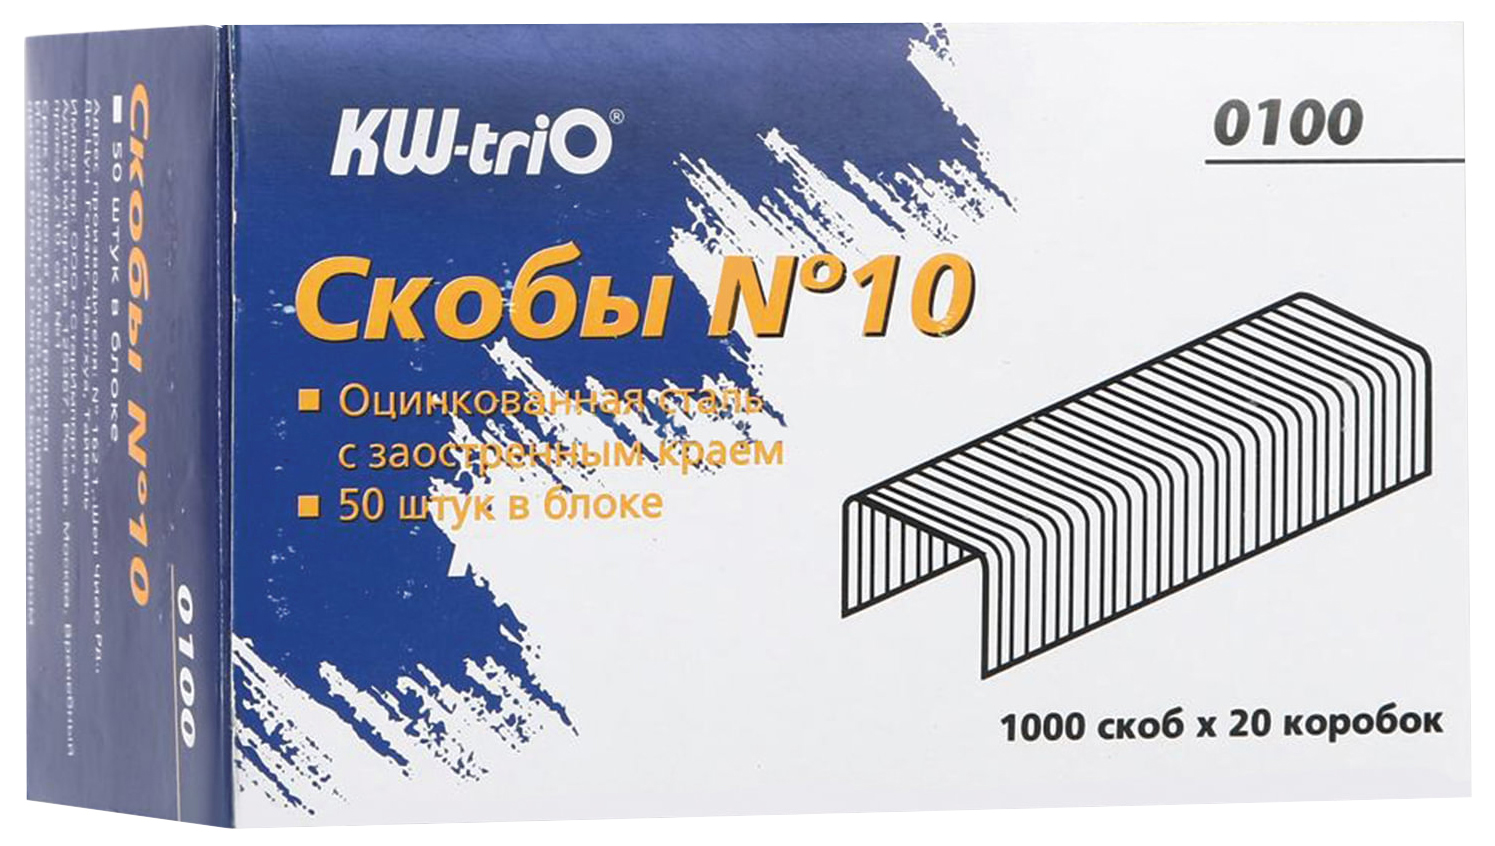 Скобы KW-TriO №10 100 20 уп по 1000 шт